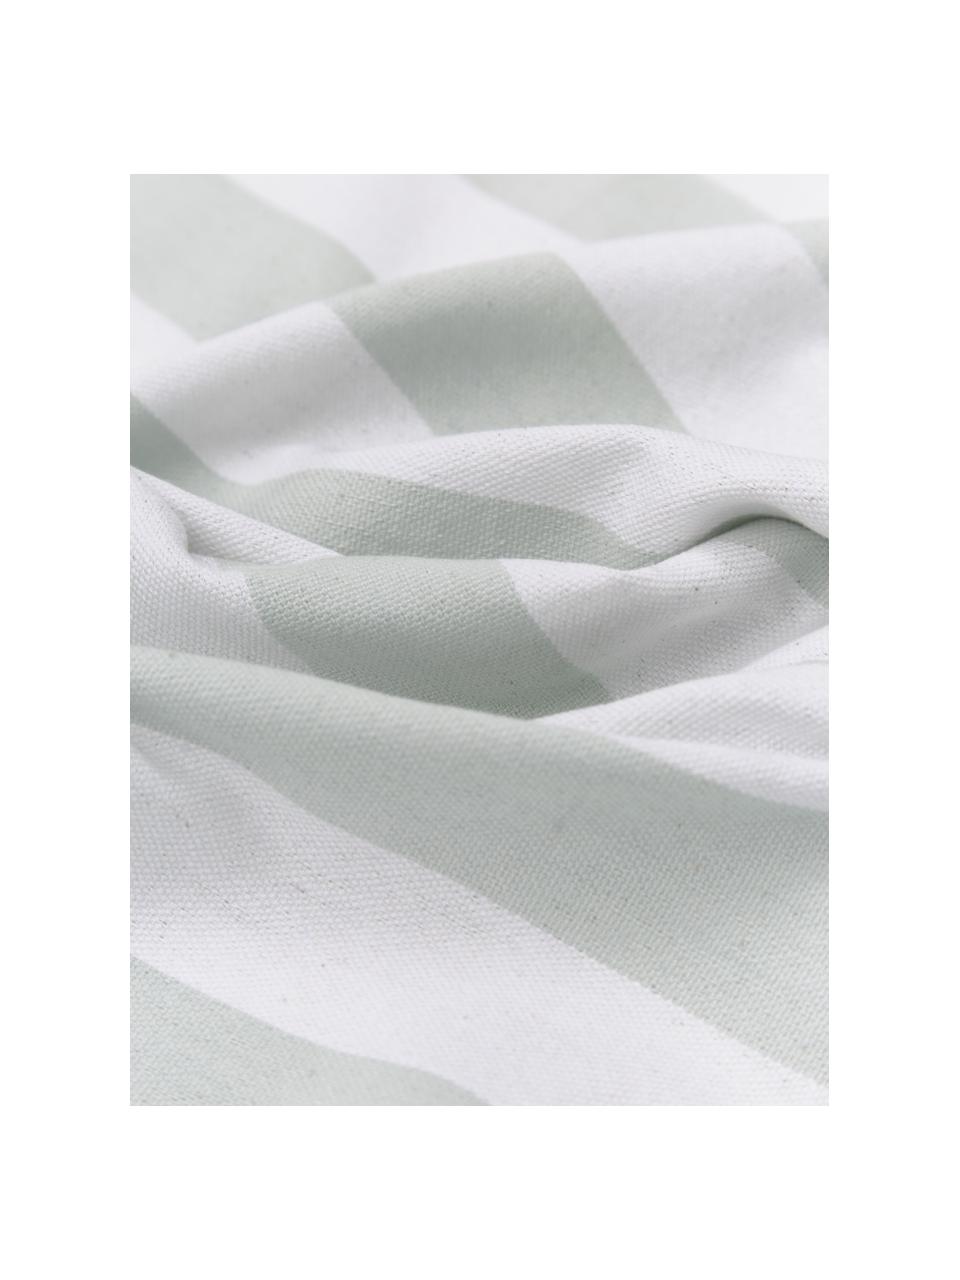 Telo mare a righe con frange Arcachon, 100% cotone, Bianco, rosa cipra, grigio chiaro, verde chiaro, Larg. 100 x Lung. 200 cm